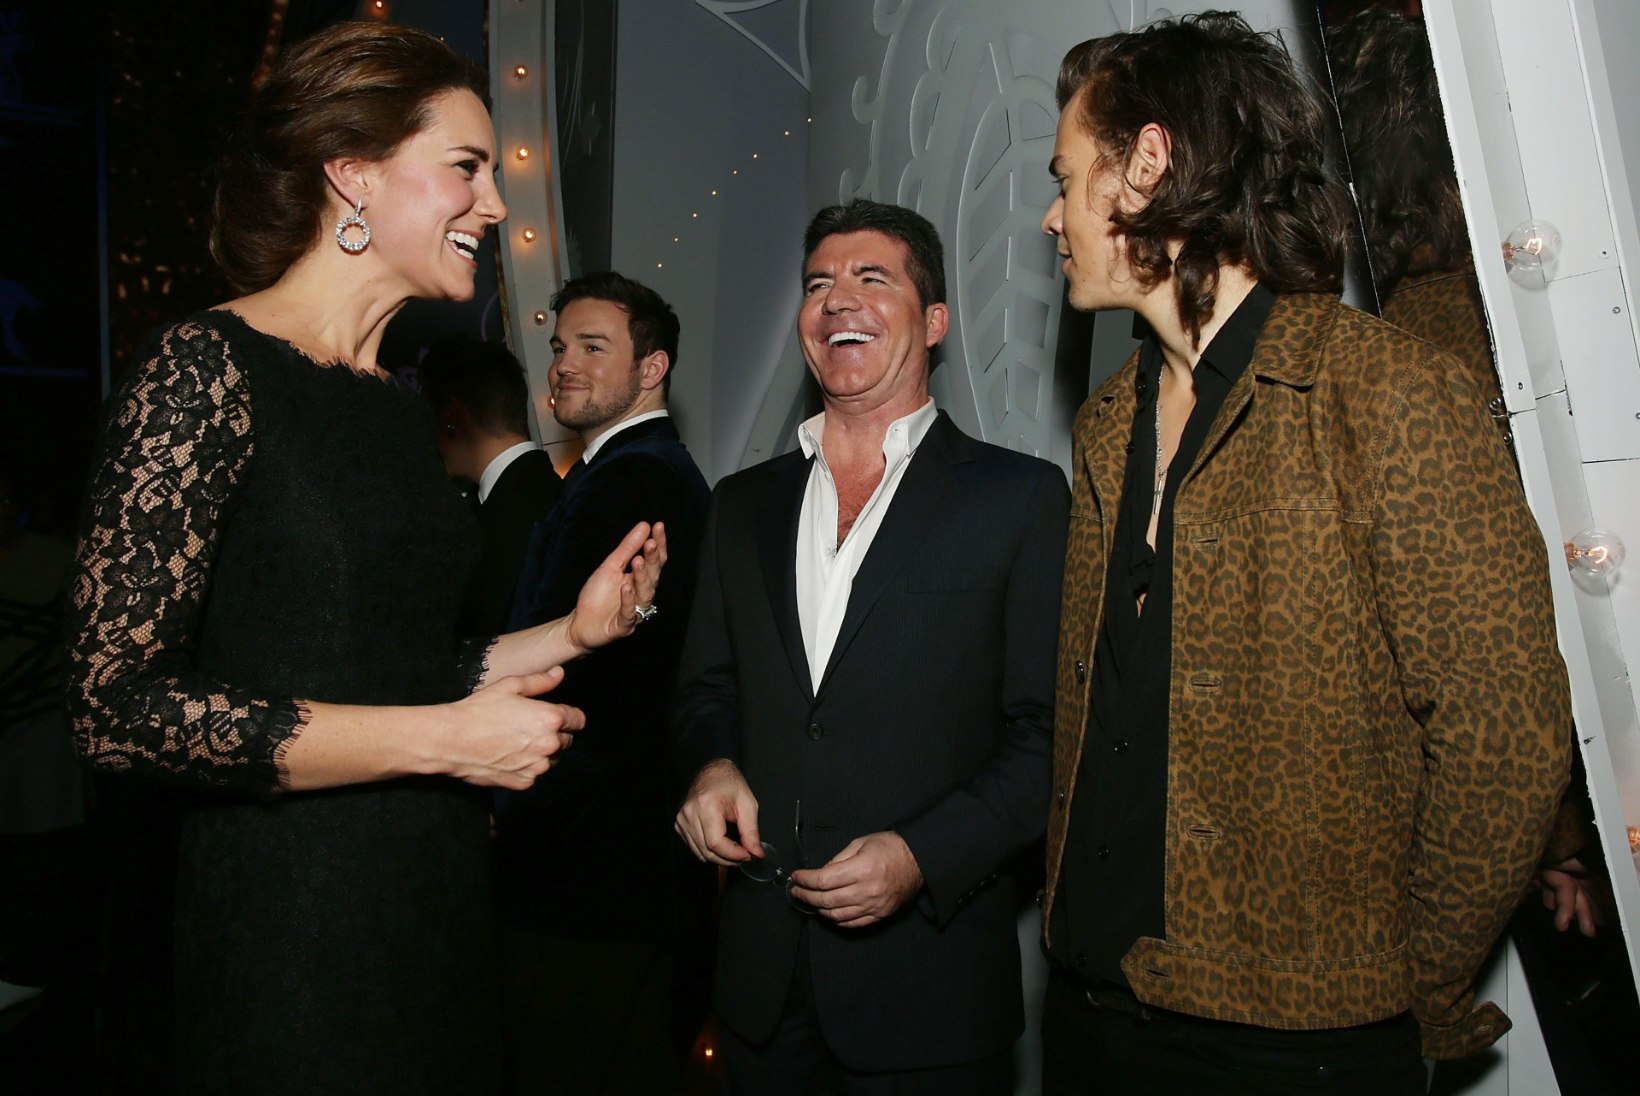 FOTOD: One Direction kohtus hertsoginna Catherine'iga